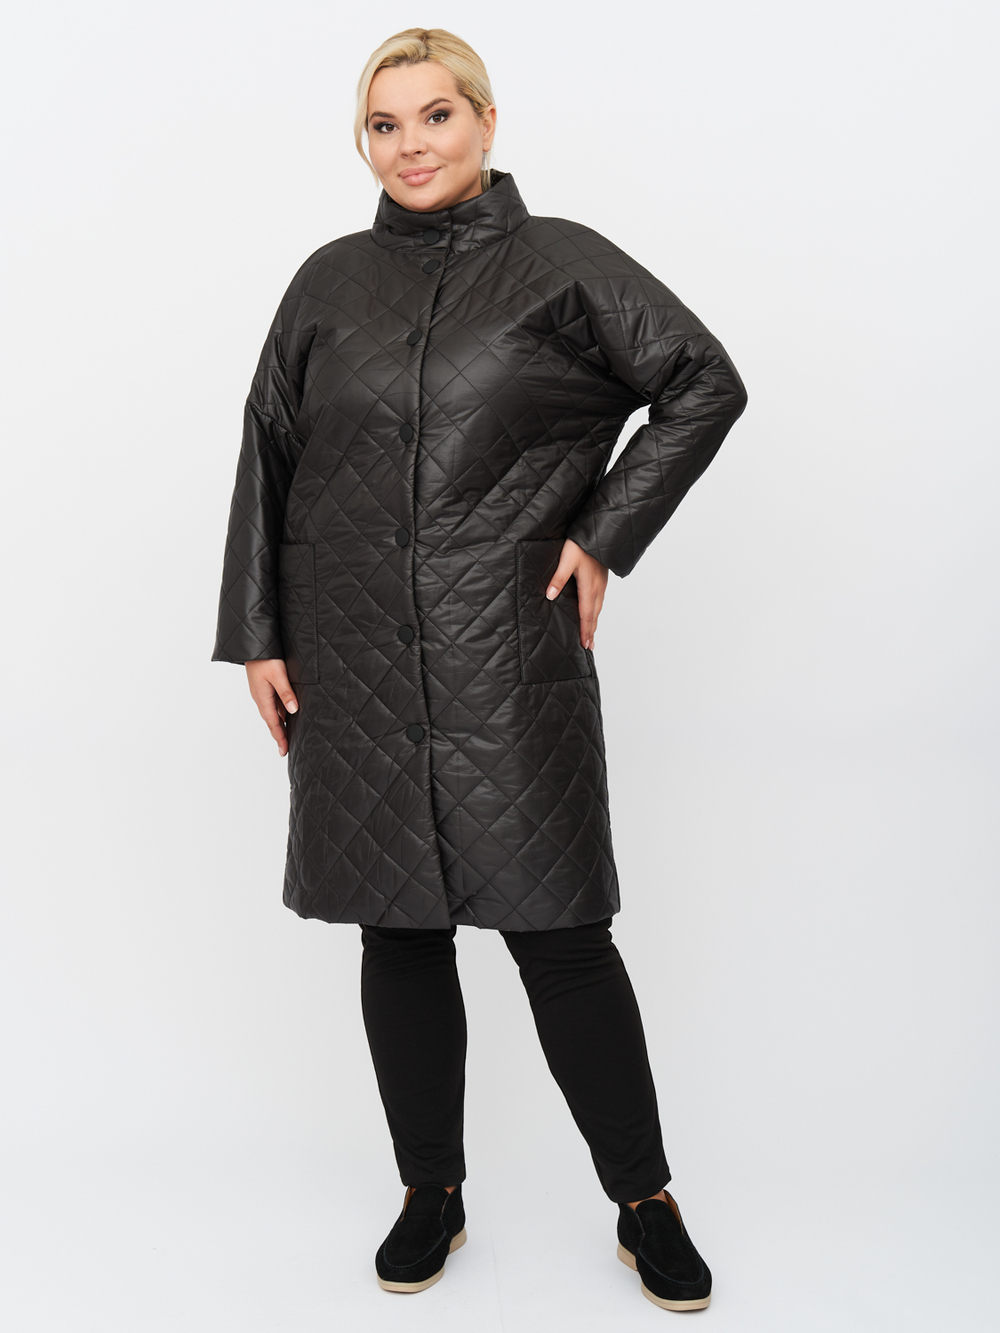 Пальто женское ZORY ZPL11633BLK01 черное 52-54 RU